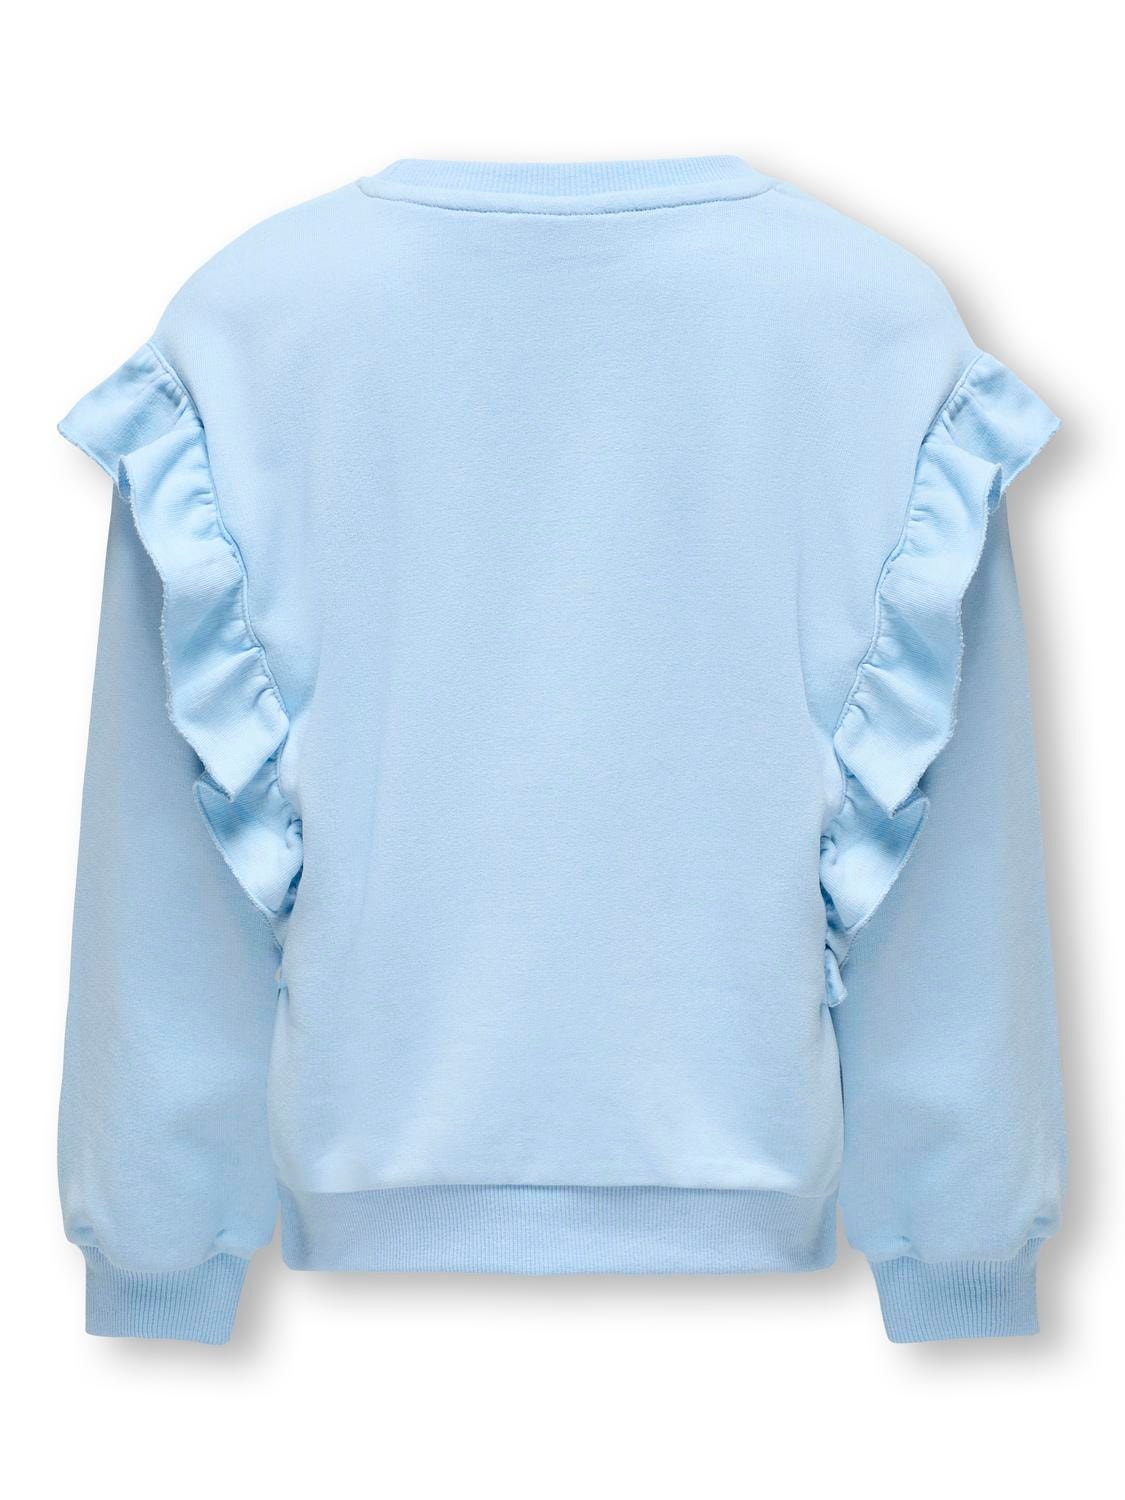 ONLY O-hals sweatshirt med flæser -Clear Sky - 15317807